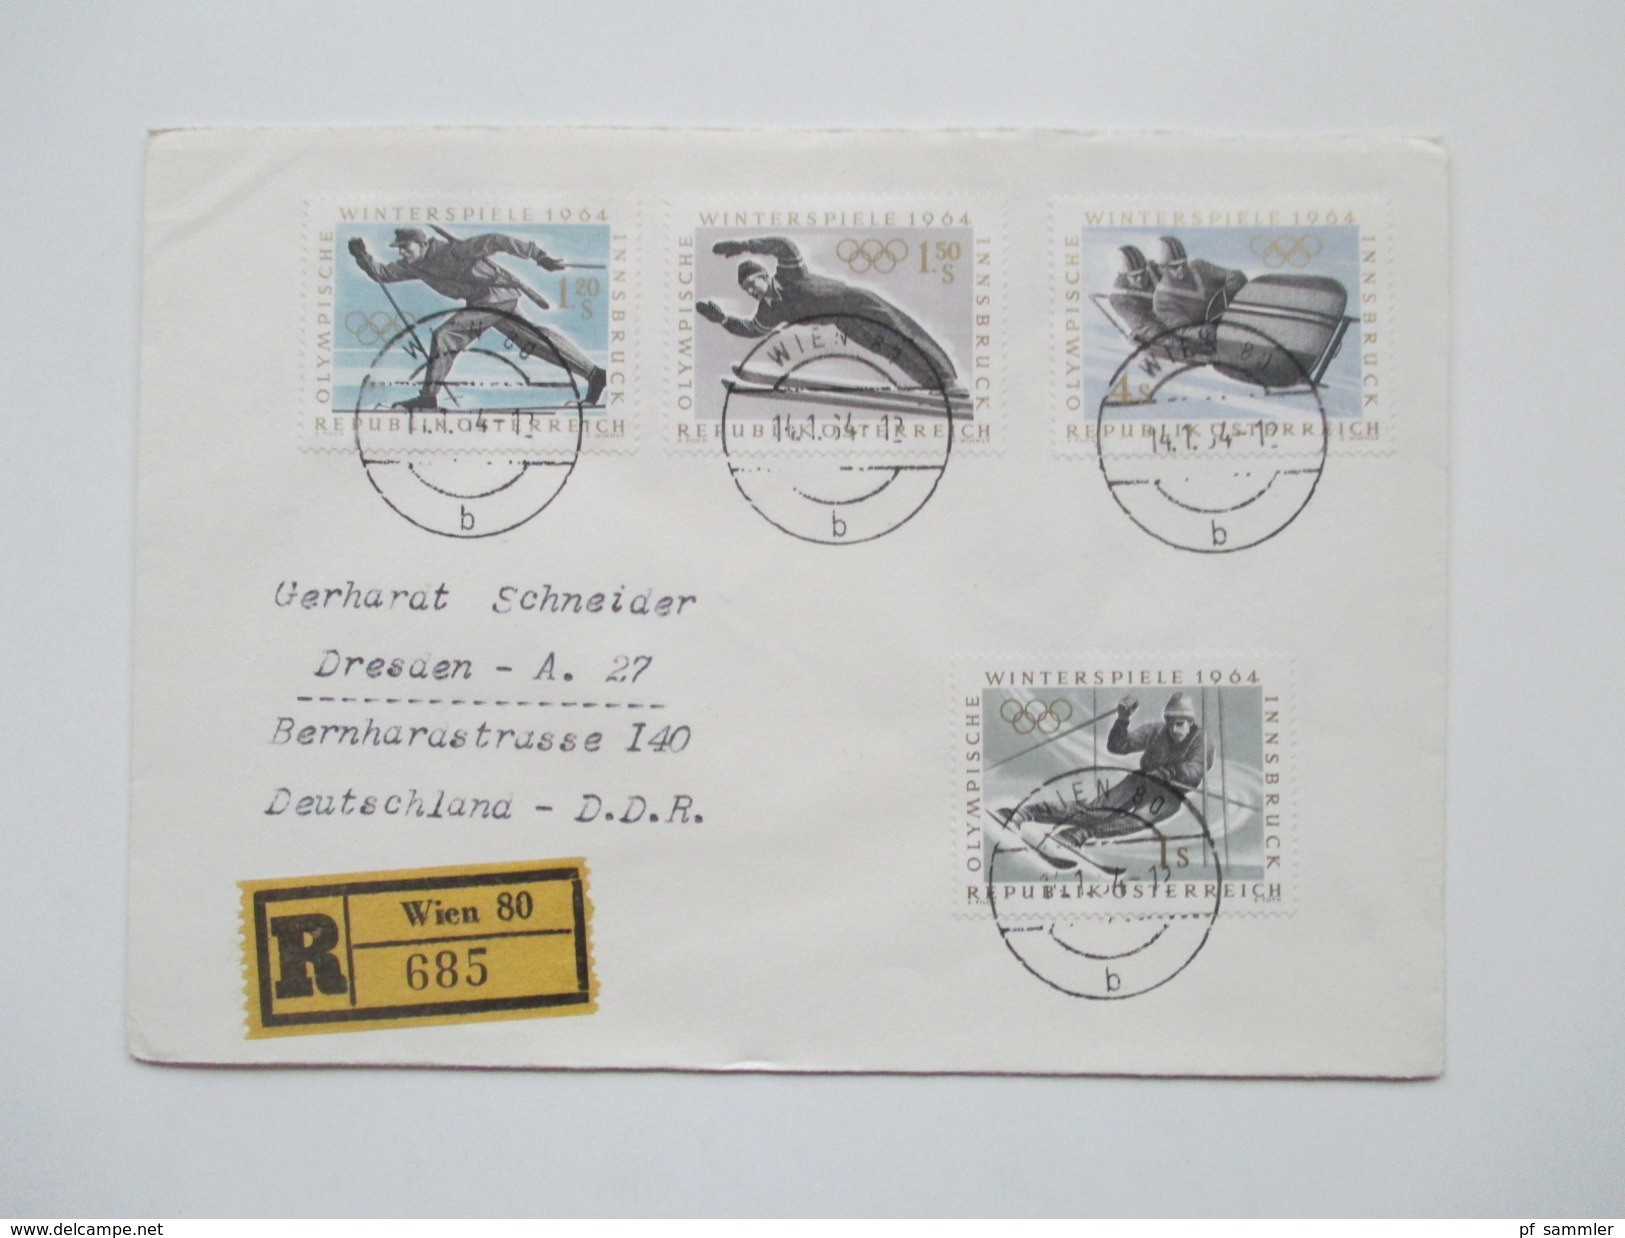 Österreich 1954 - 70er Jahre 53 FDC / R-Briefe in die DDR gelaufen! Satzbriefe / Sondertarif Tirol / Christkindl usw.